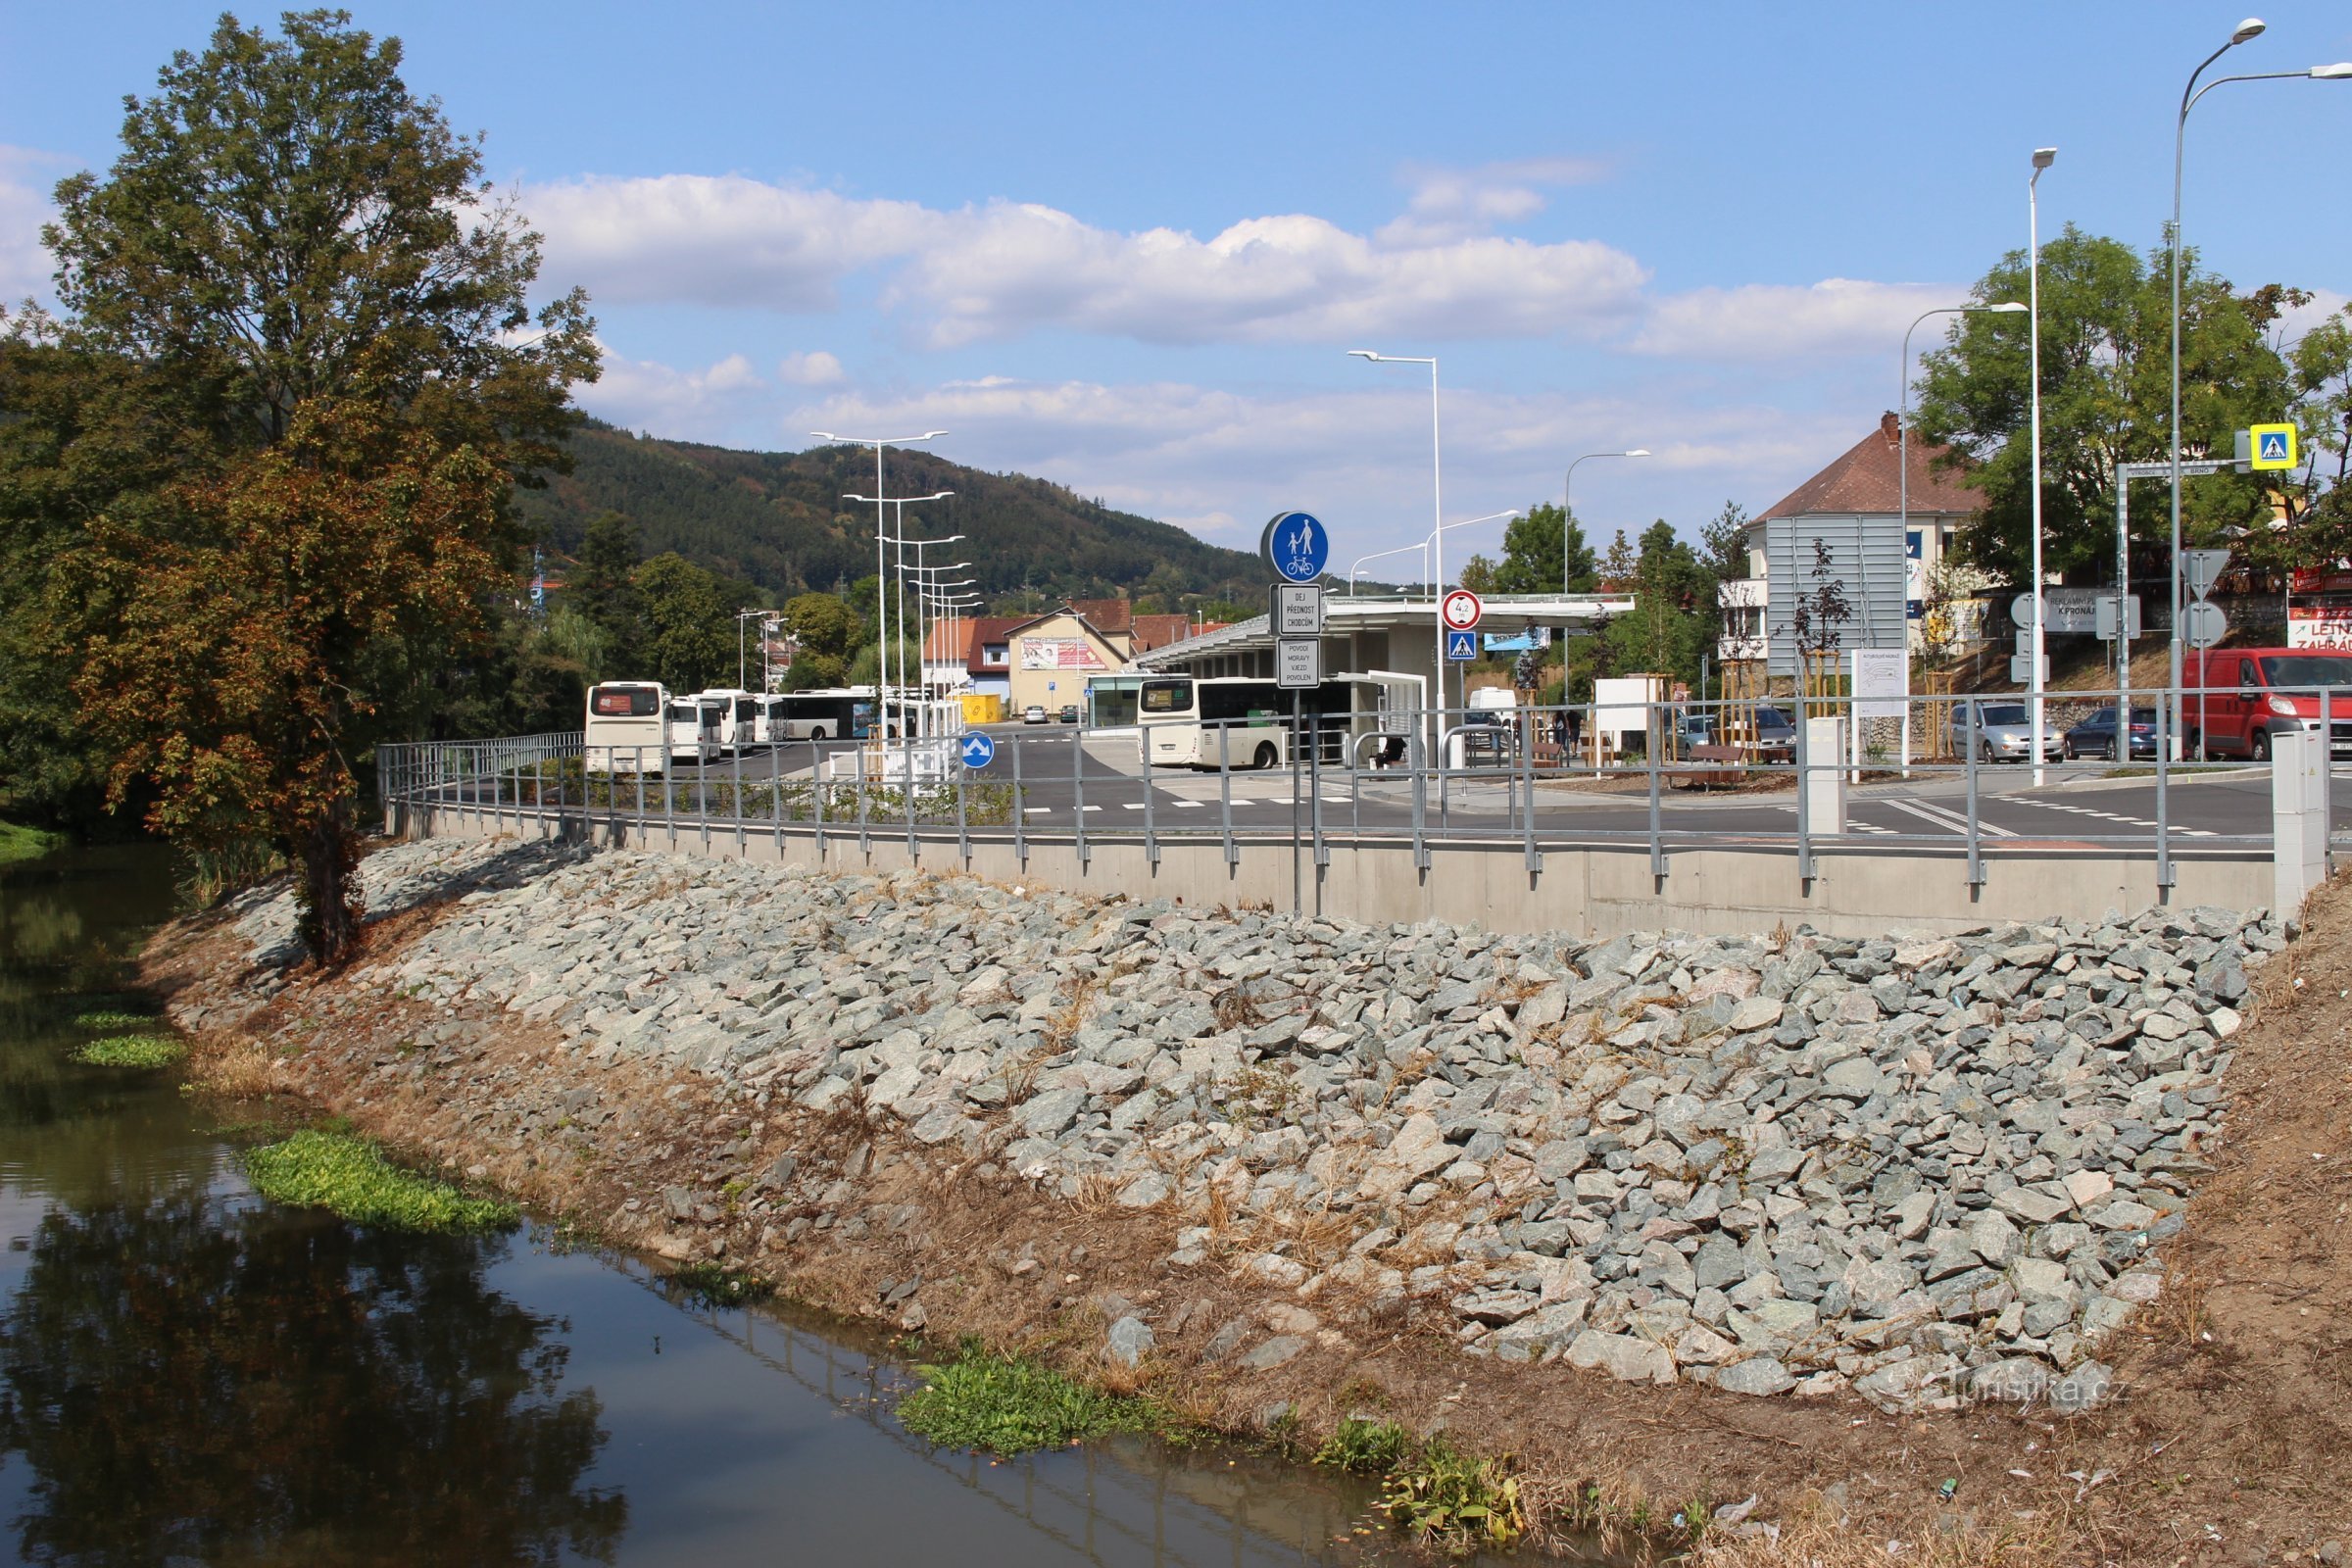 Autobusové nádraží se nachází na břehu řeky Svitavy